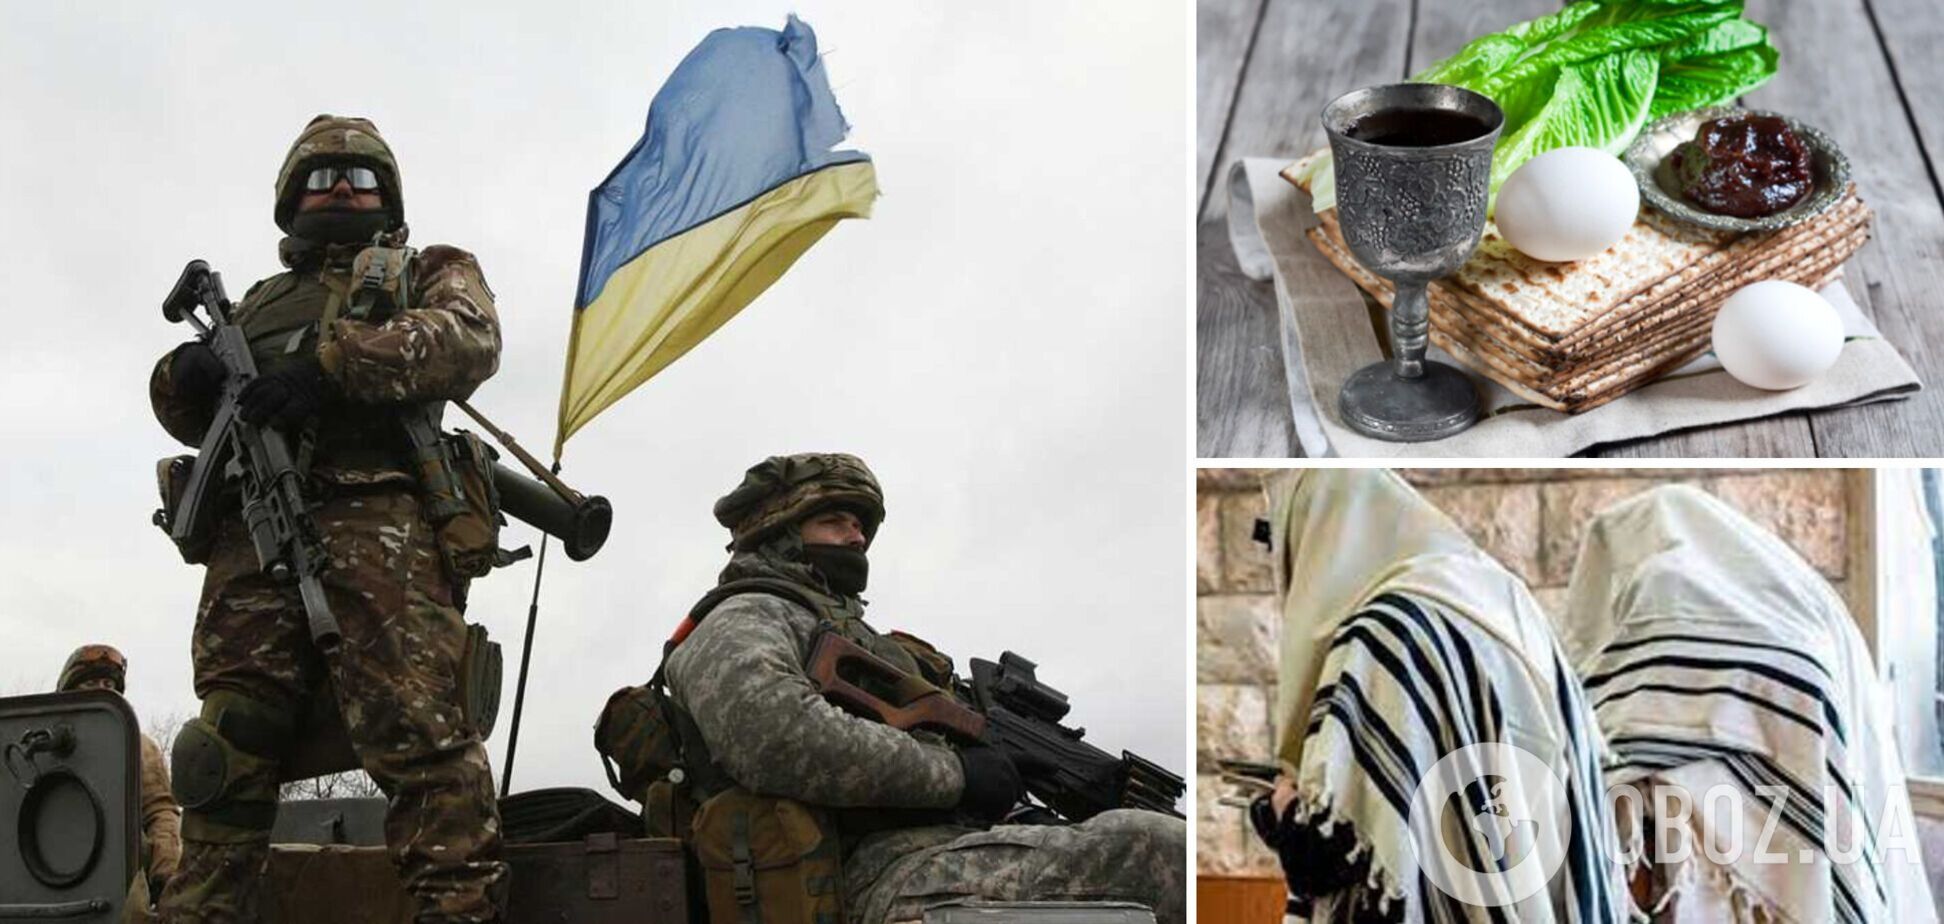 Євреї, які захищають Україну у лавах ЗСУ, відсвяткували Песах. Відео